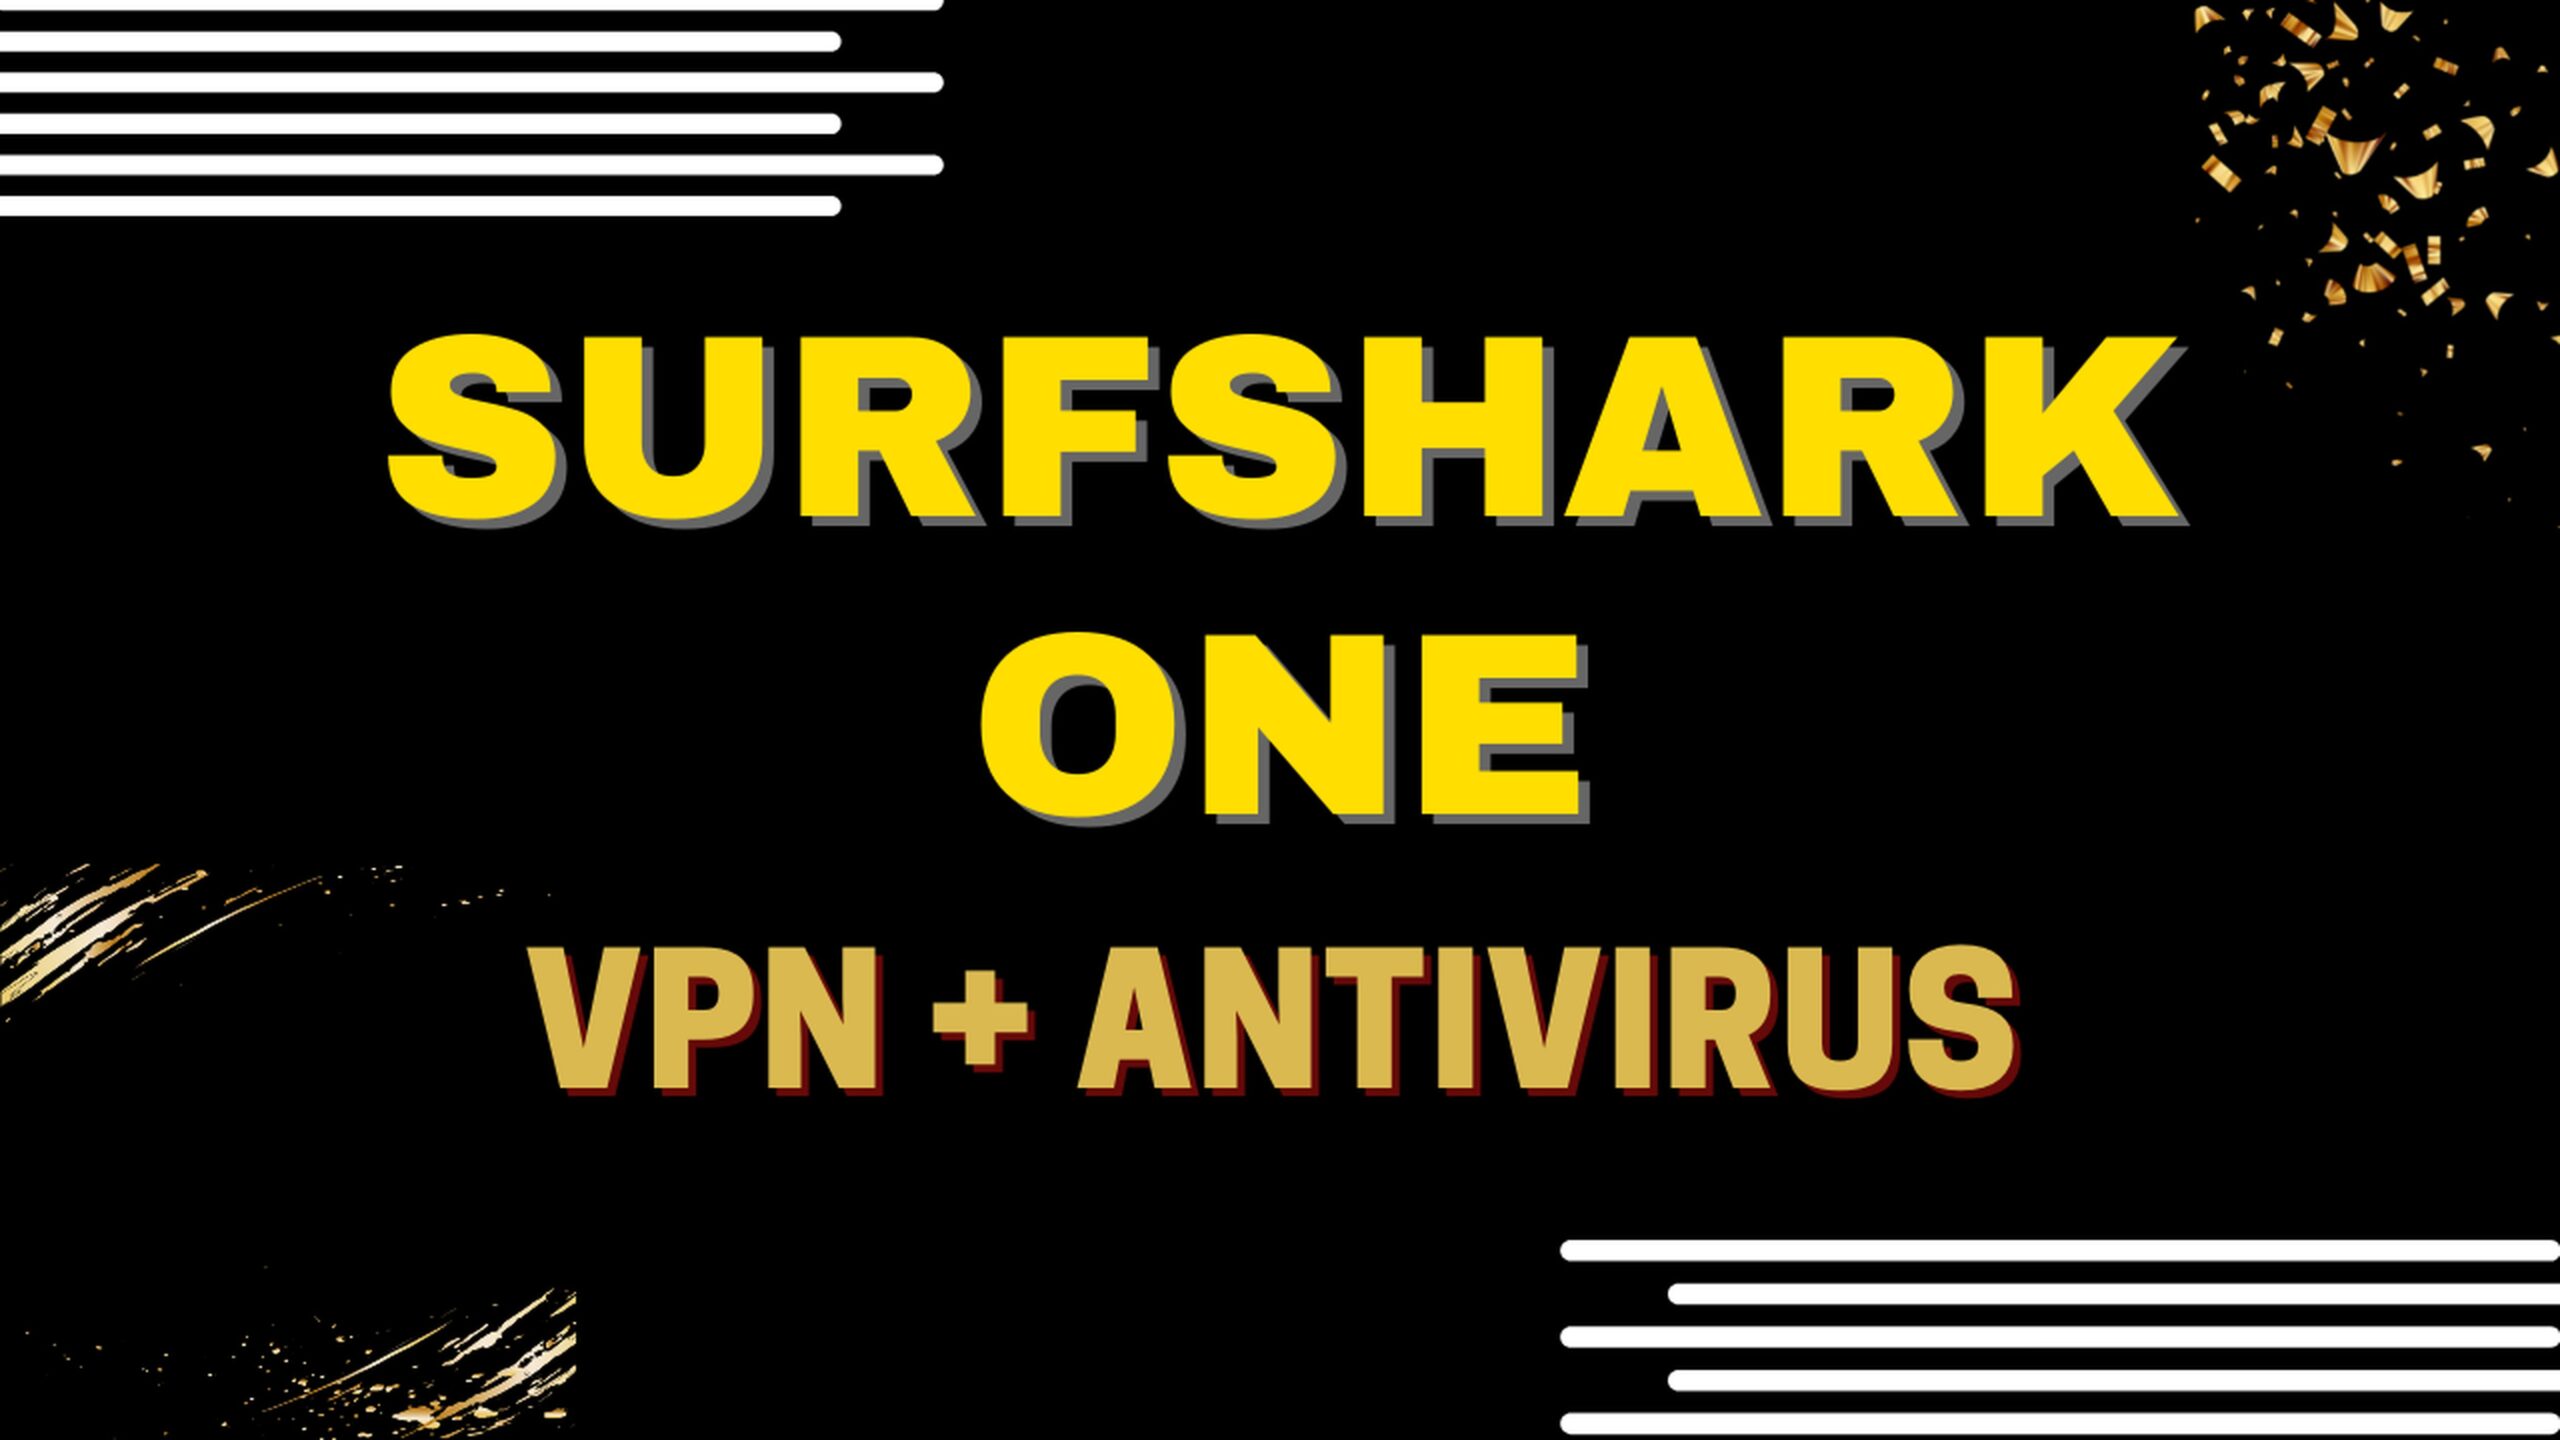 Surfshark One, une offre tout-en-un : VPN + Antivirus 10